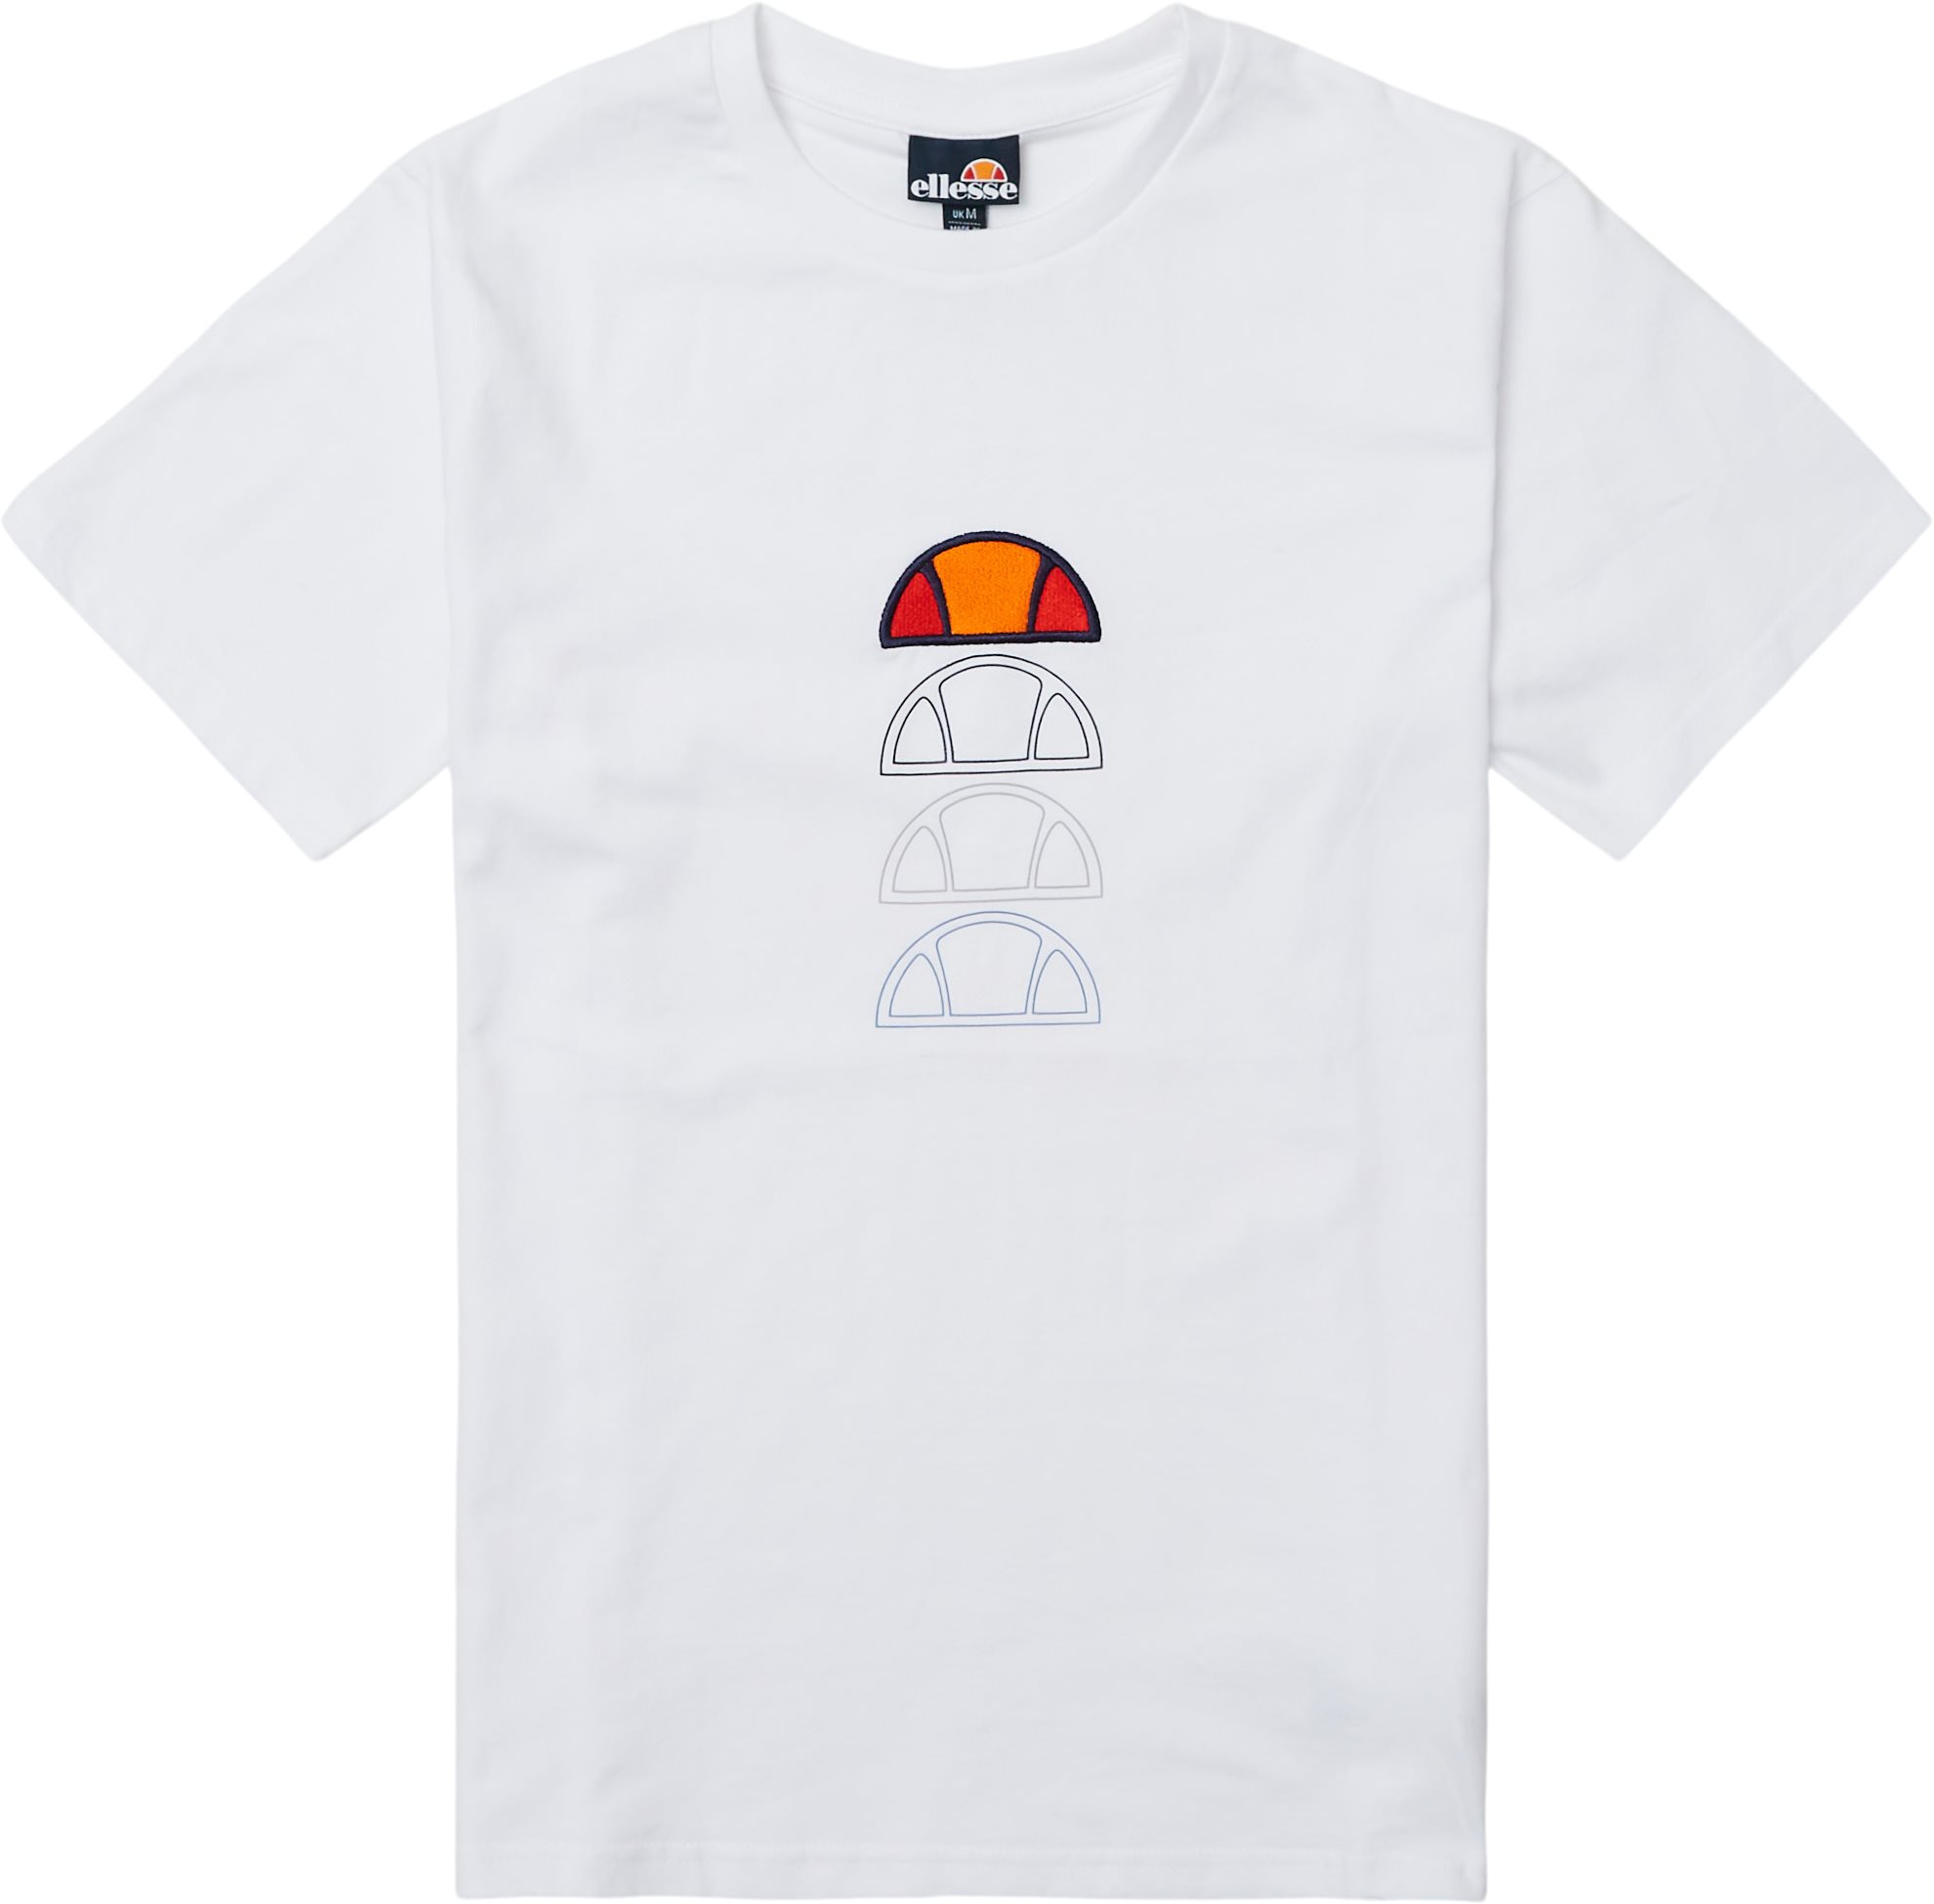 El Verso Tee - T-shirts - Regular fit - Hvid